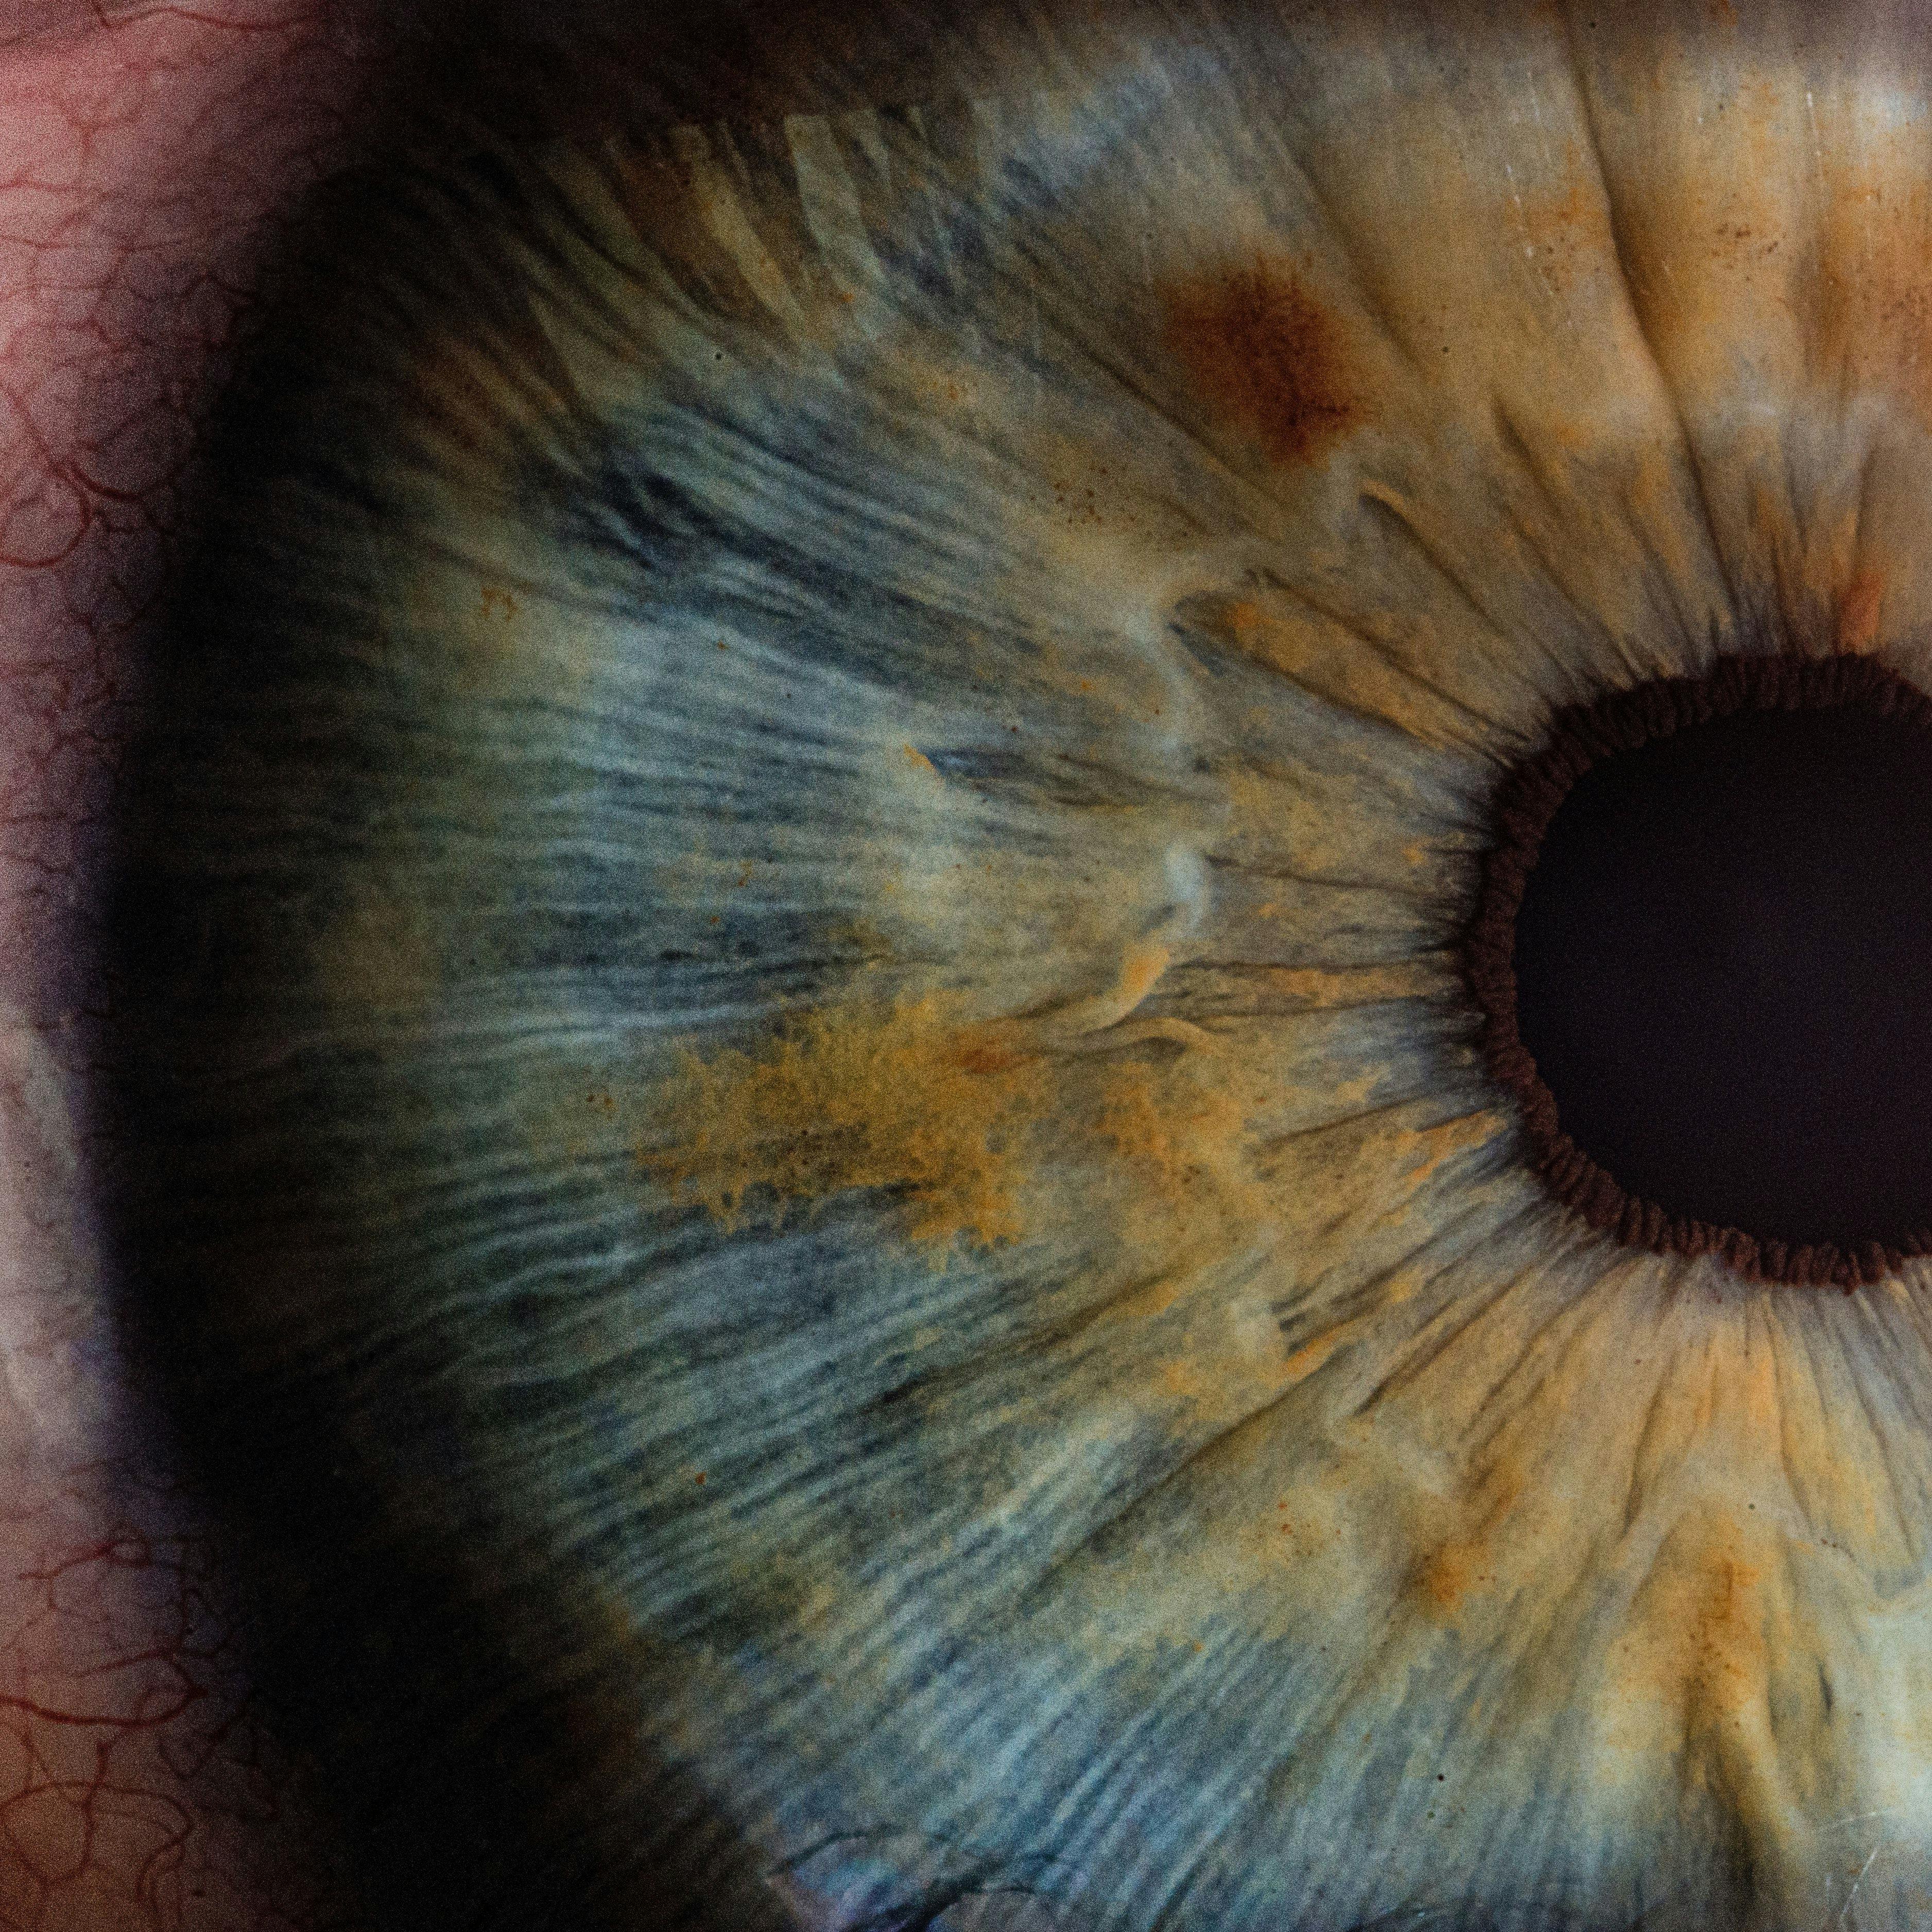 close-up of eye | Credit: v2osk/Unsplash